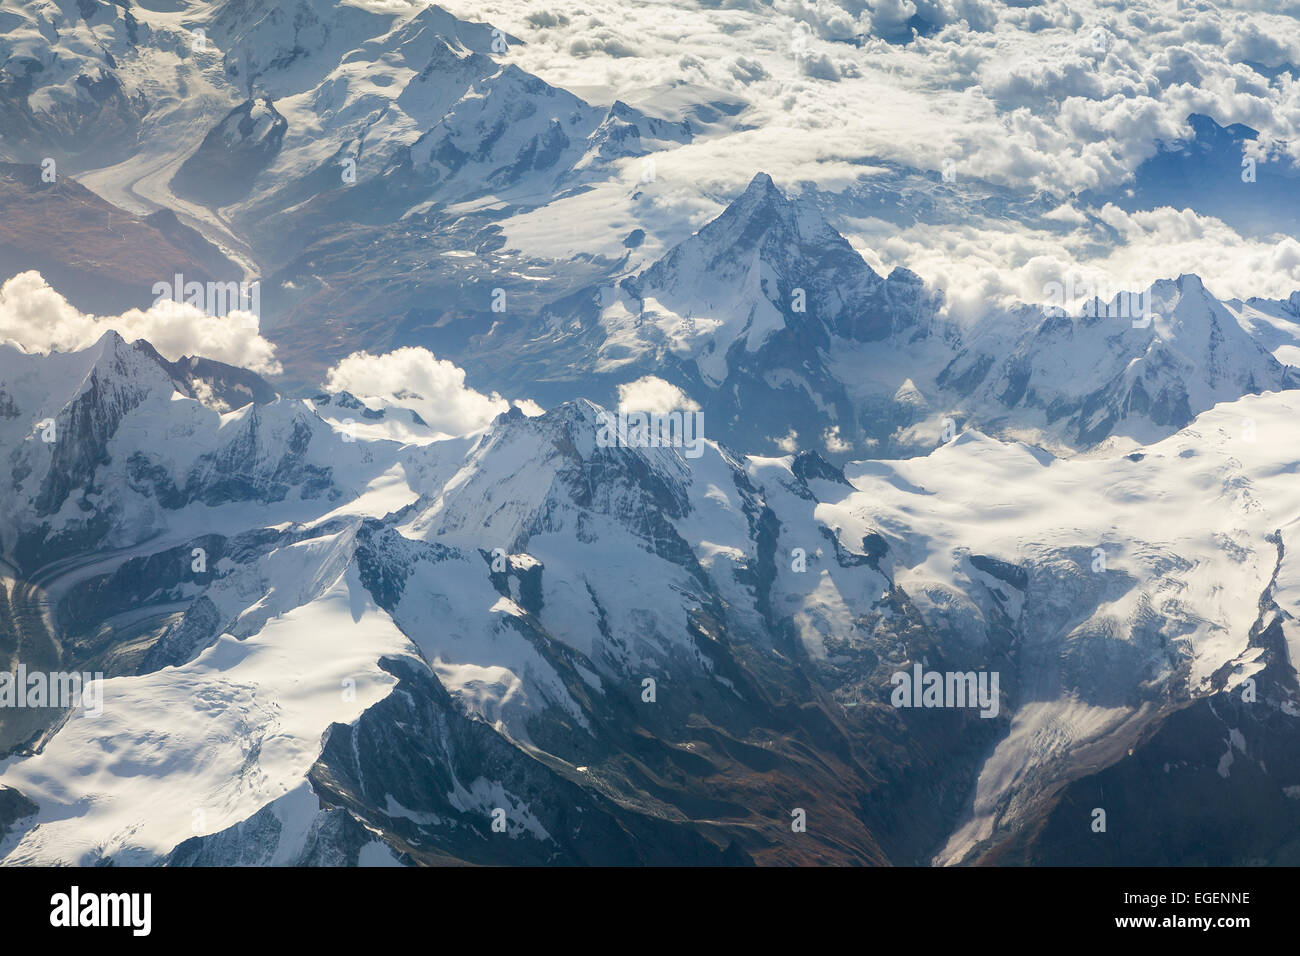 Luftaufnahme der Walliser Alpen mit den Bergen Dent Blanche und Matterhorn und Gornergletscher, Walliser Alpen, Schweiz Stockfoto